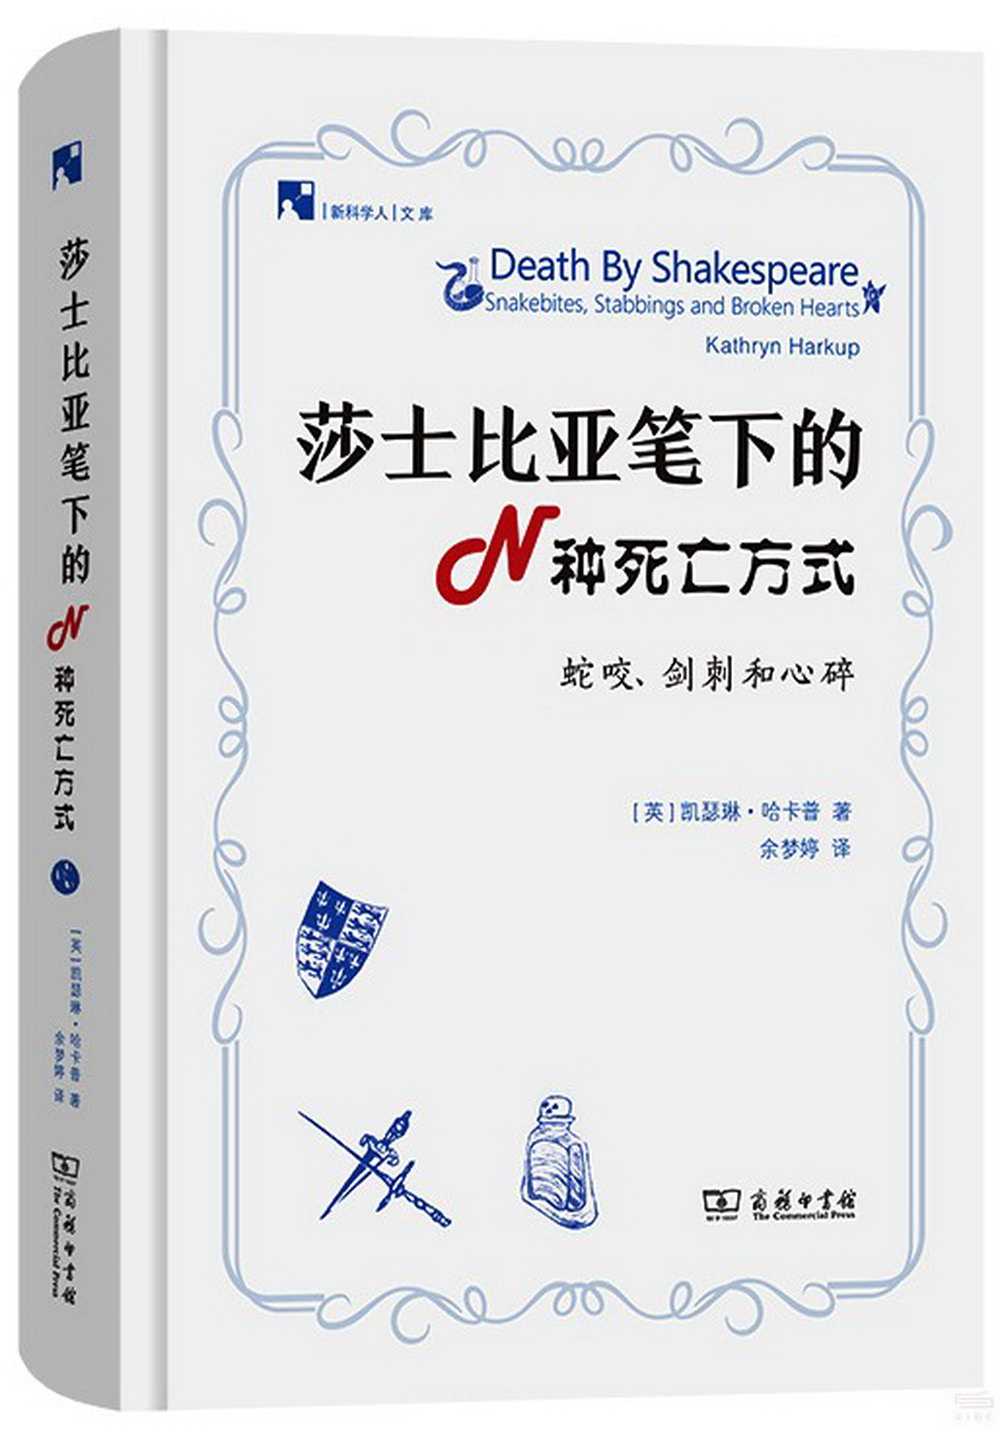 莎士比亞筆下的N種死亡方式：蛇咬、劍刺和心碎